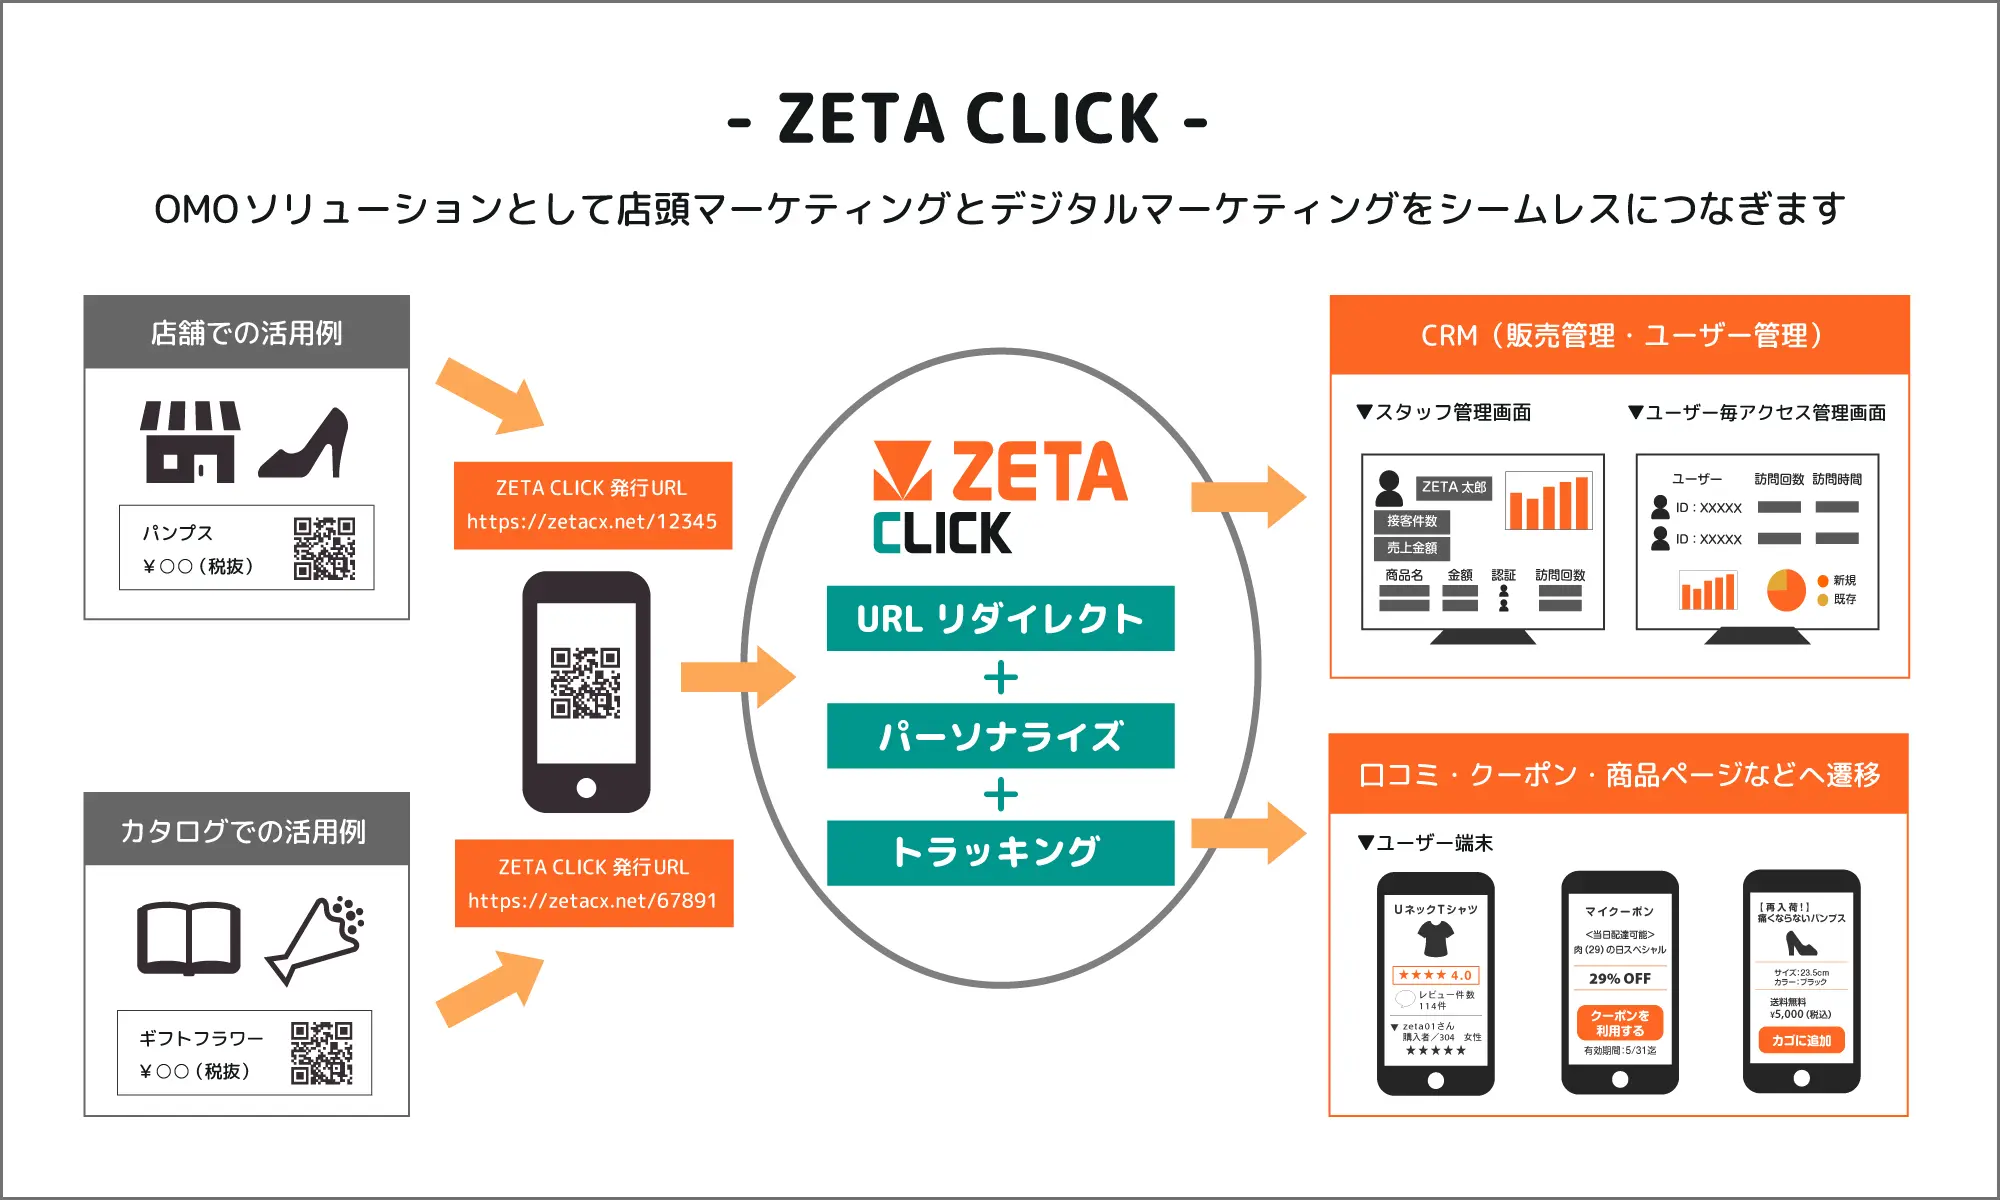 ZETA CLICK の概念図